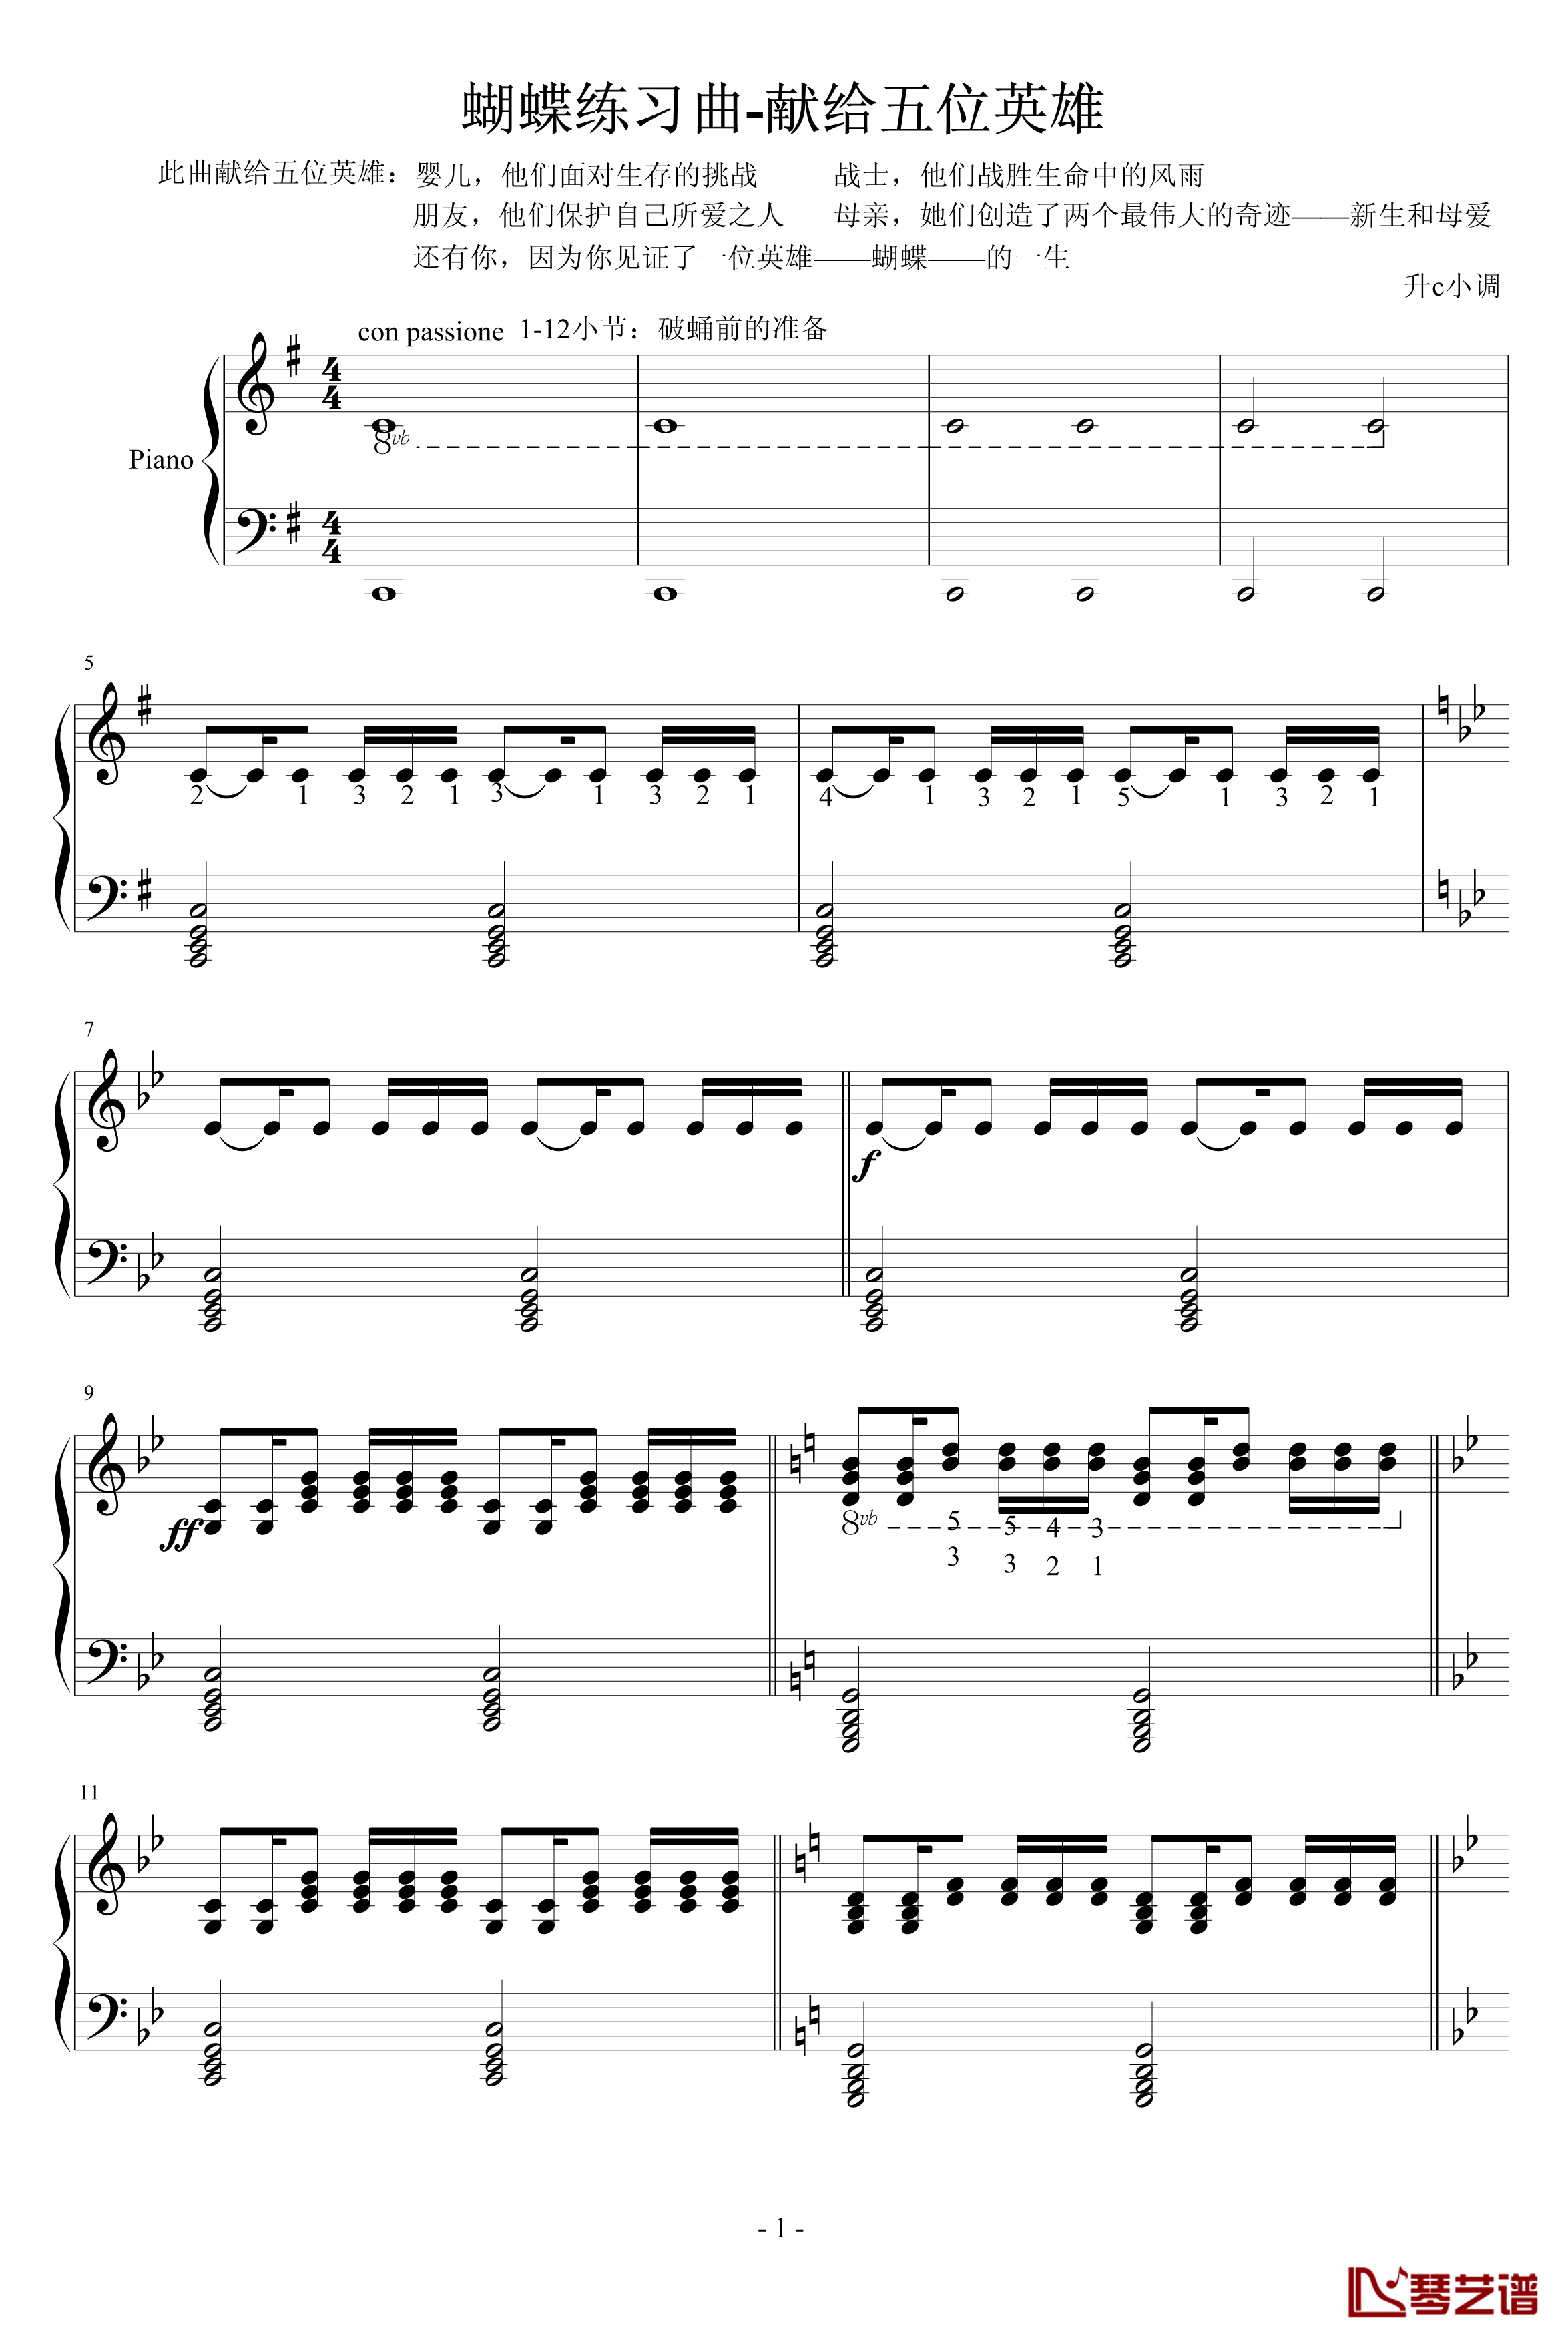 蝴蝶练习曲钢琴谱-升c小调1